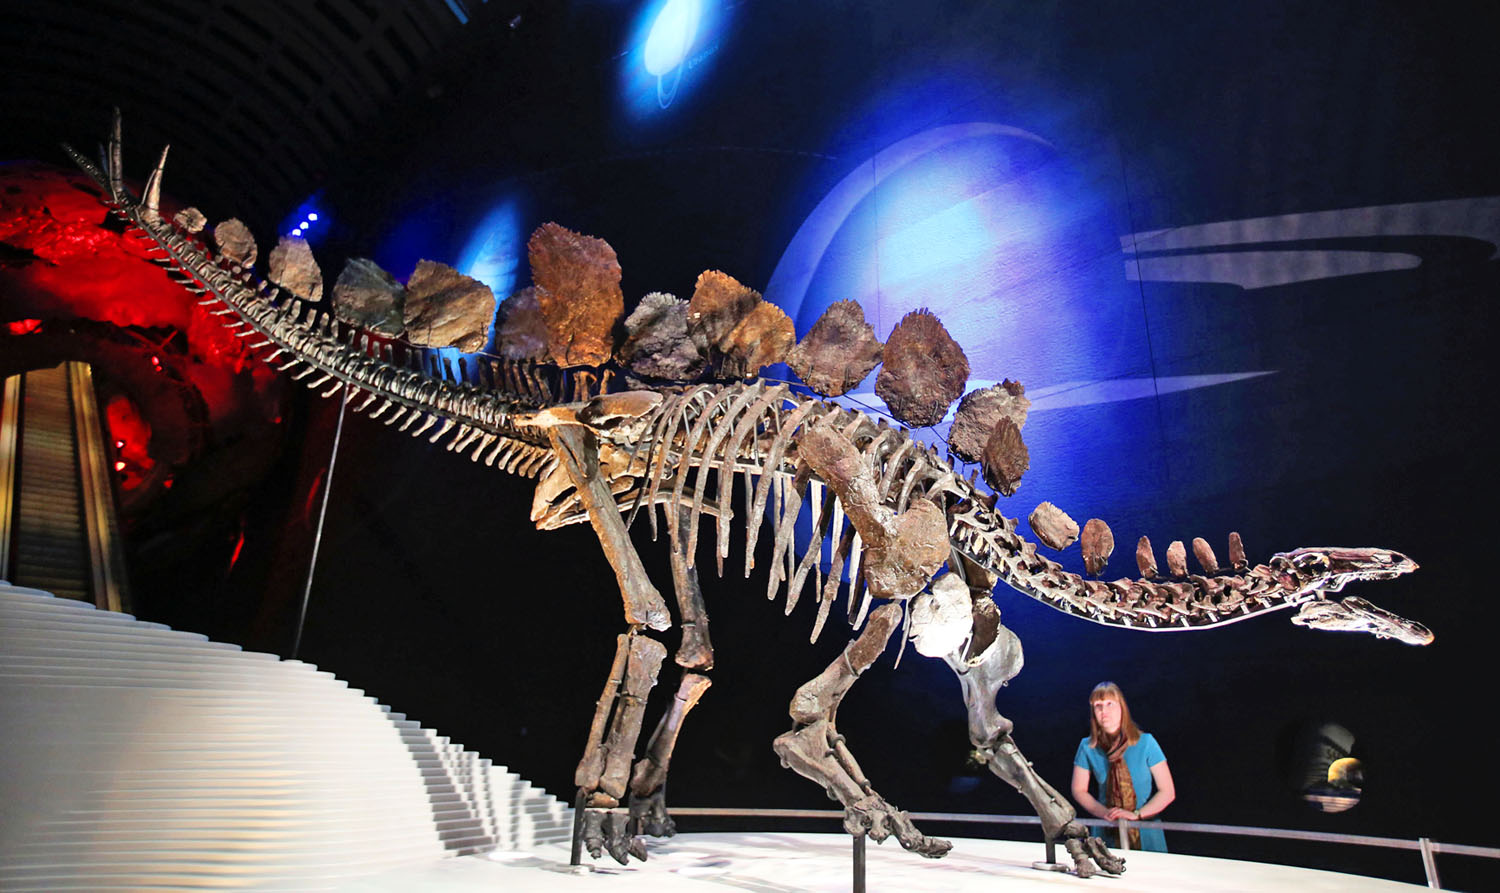 Sophie száz éve a legteljesebb dinoszaurusz, aki betette a lábát a londoni Természettudományi Múzeumba